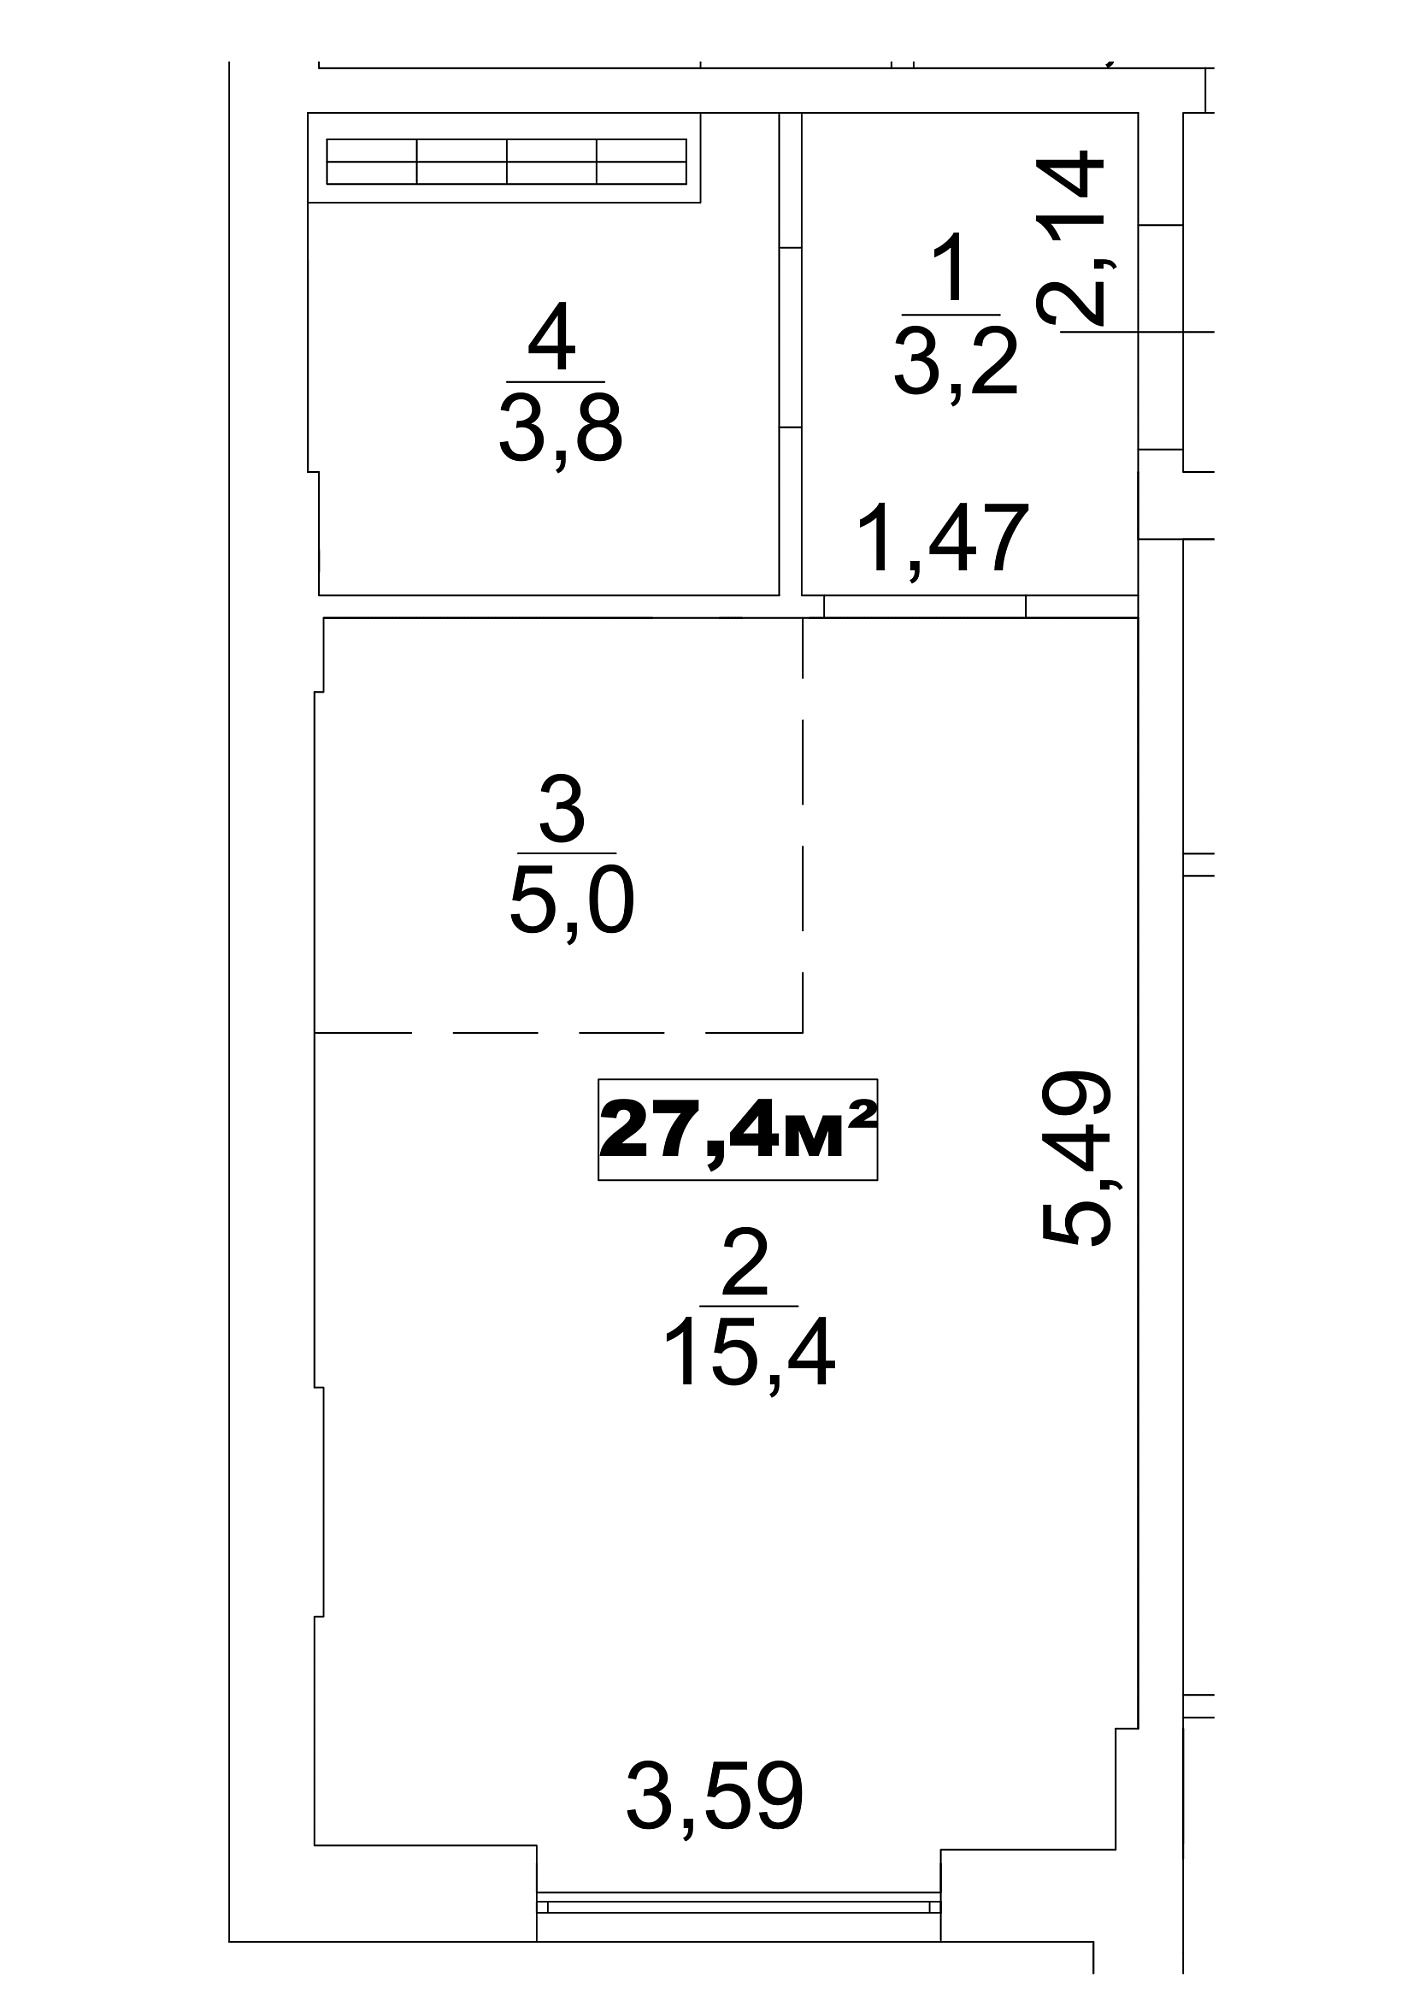 Планування Smart-квартира площею 27.4м2, AB-13-02/0009а.